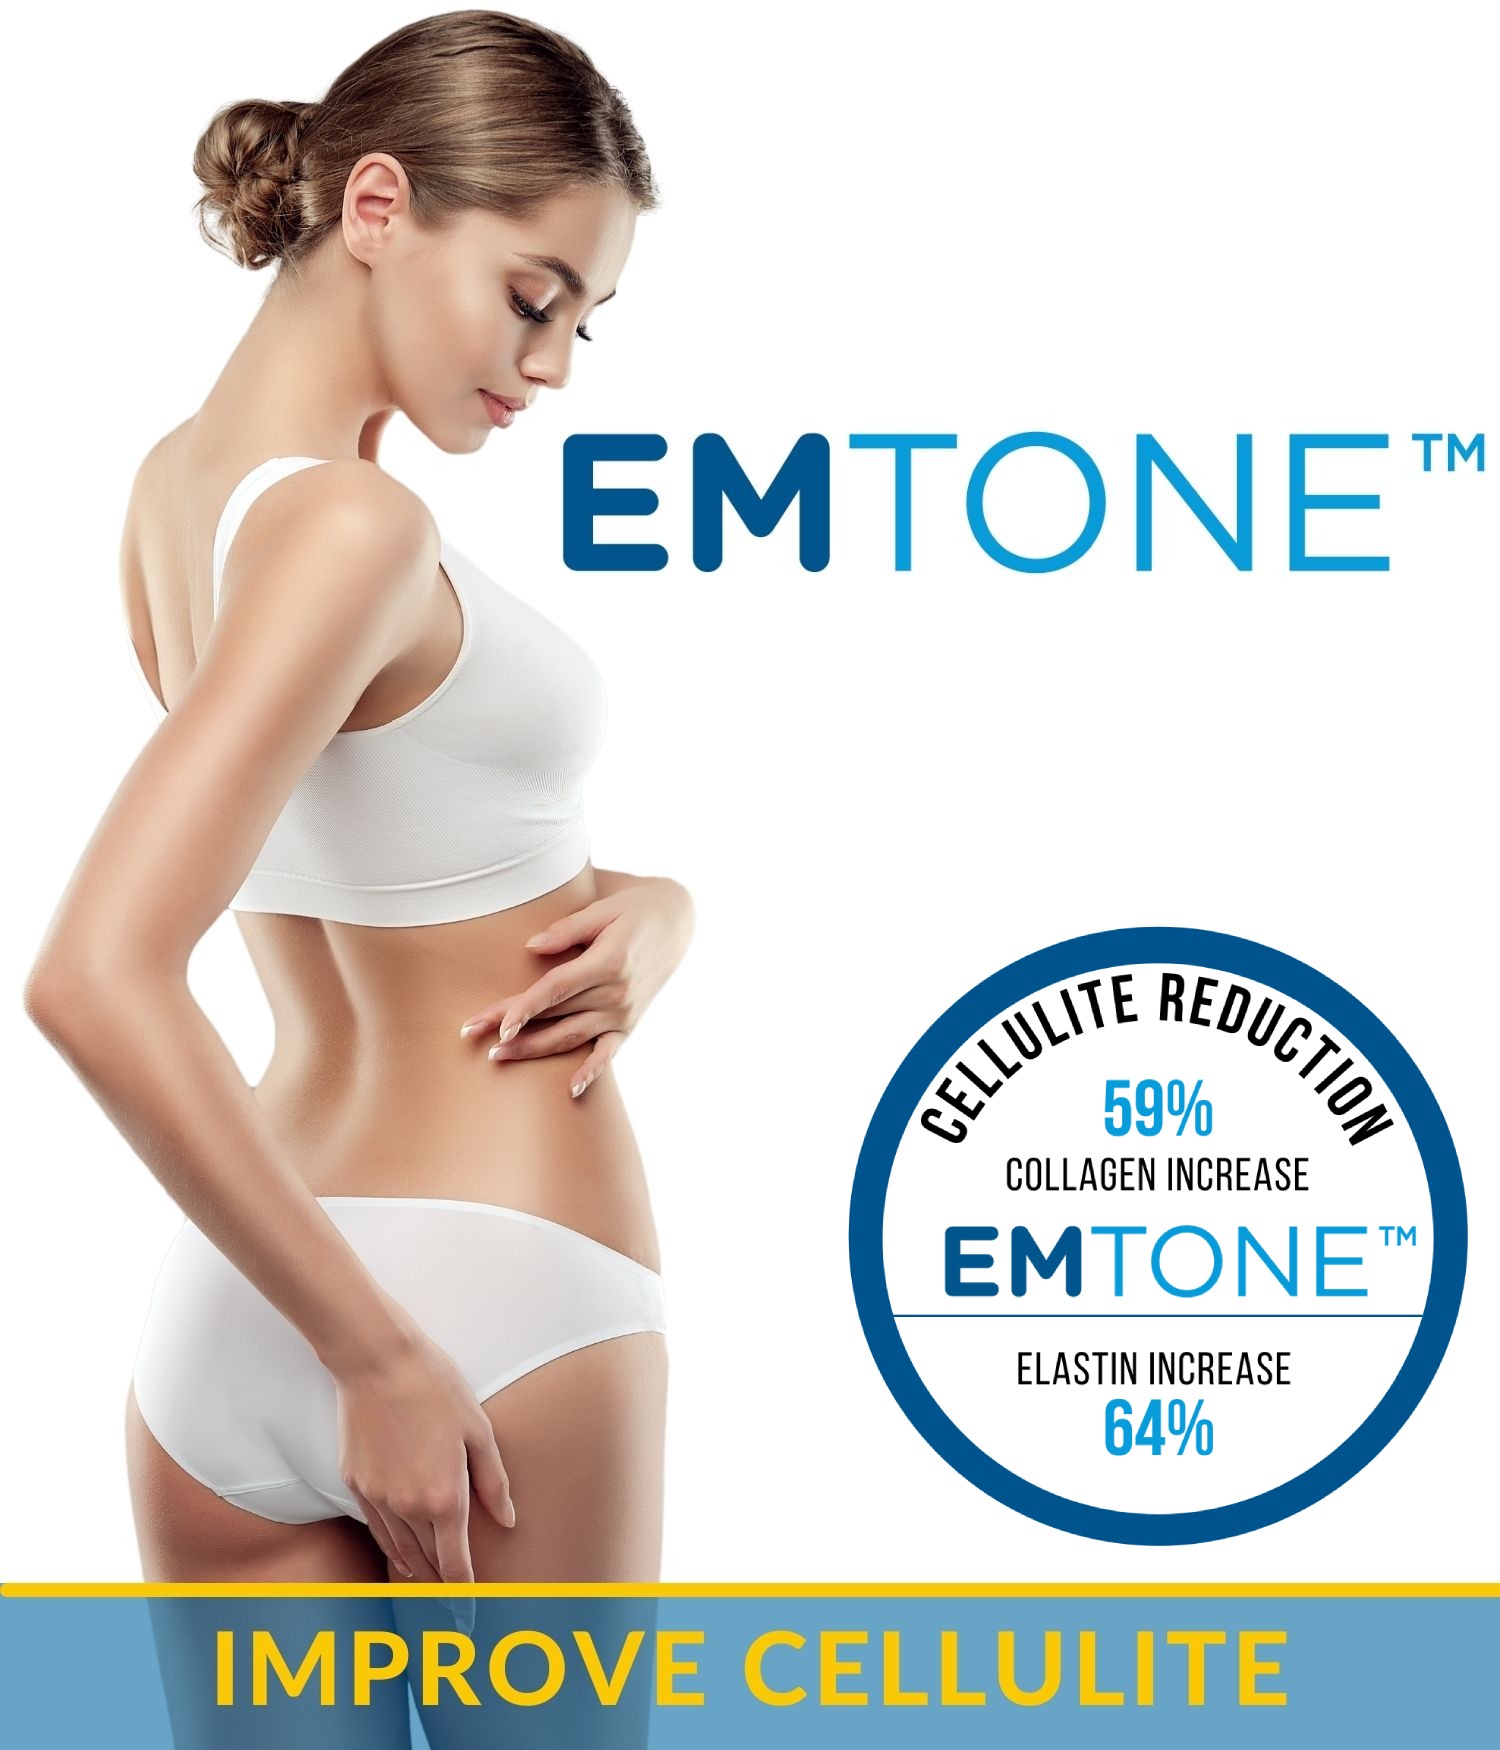 Emtone Improve cellulite